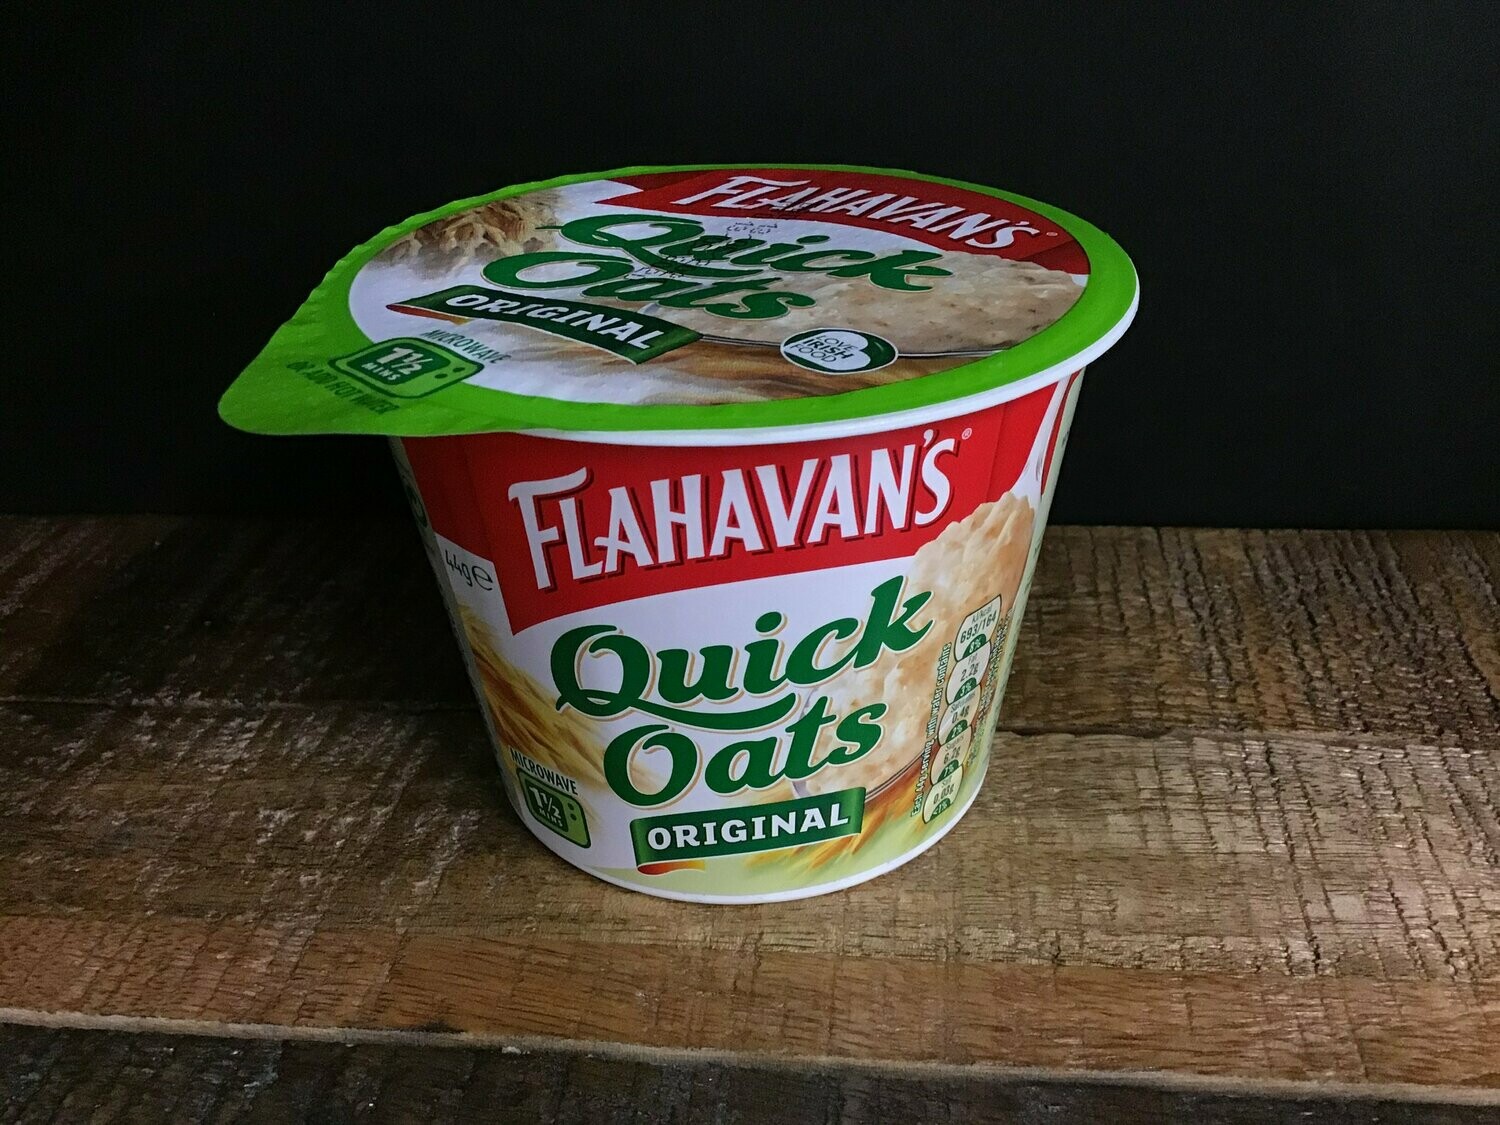 Flahavan's Quick Oats Original 44g